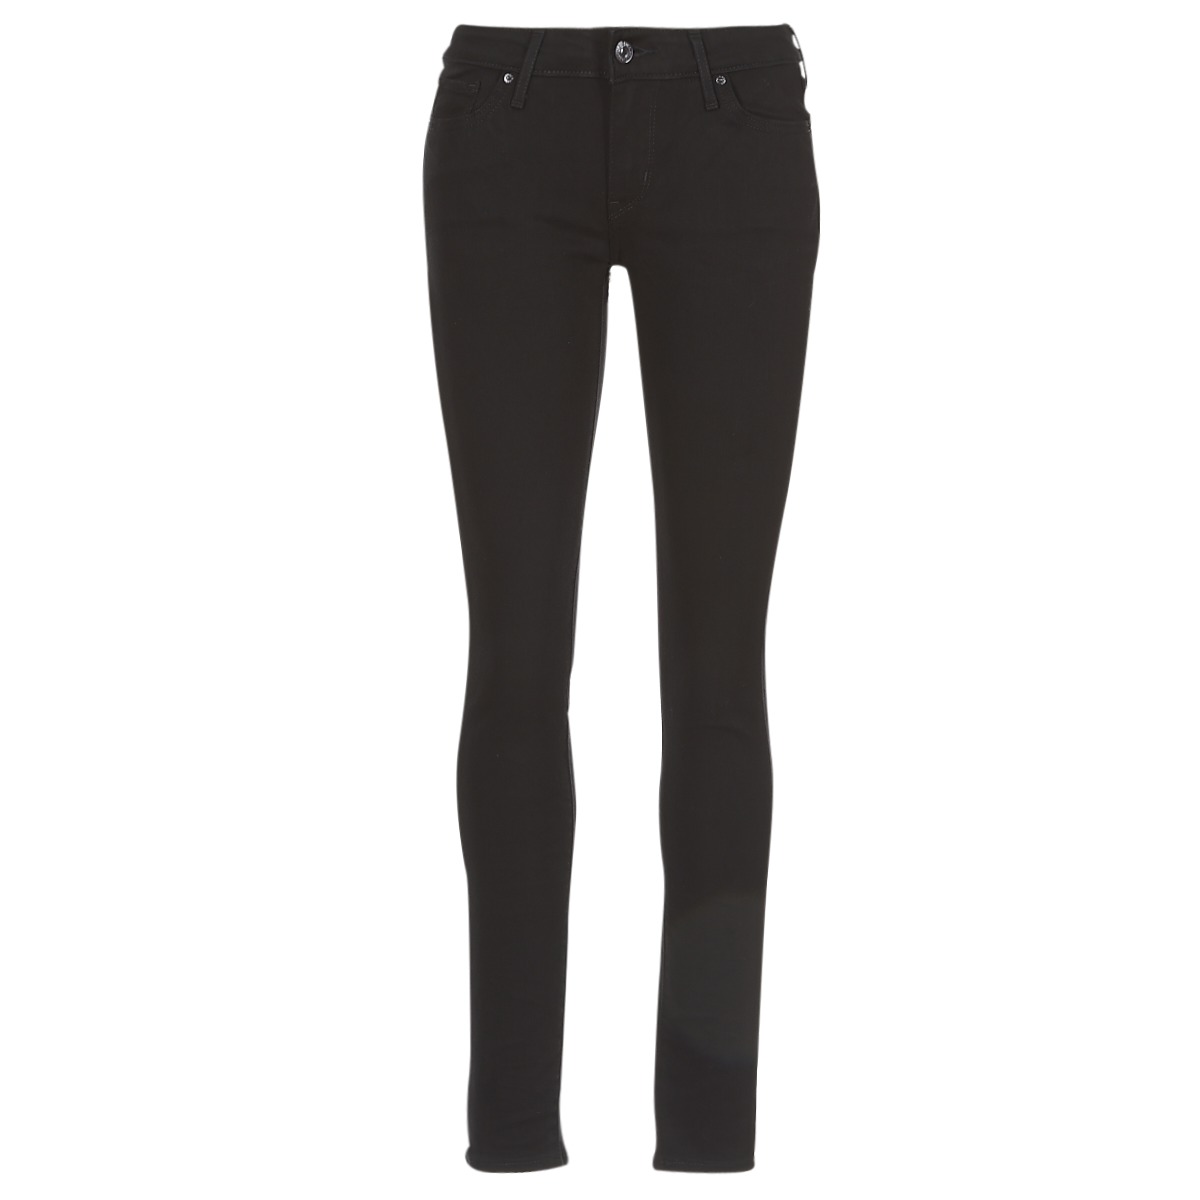 material Skinny jeans Women 99,00 